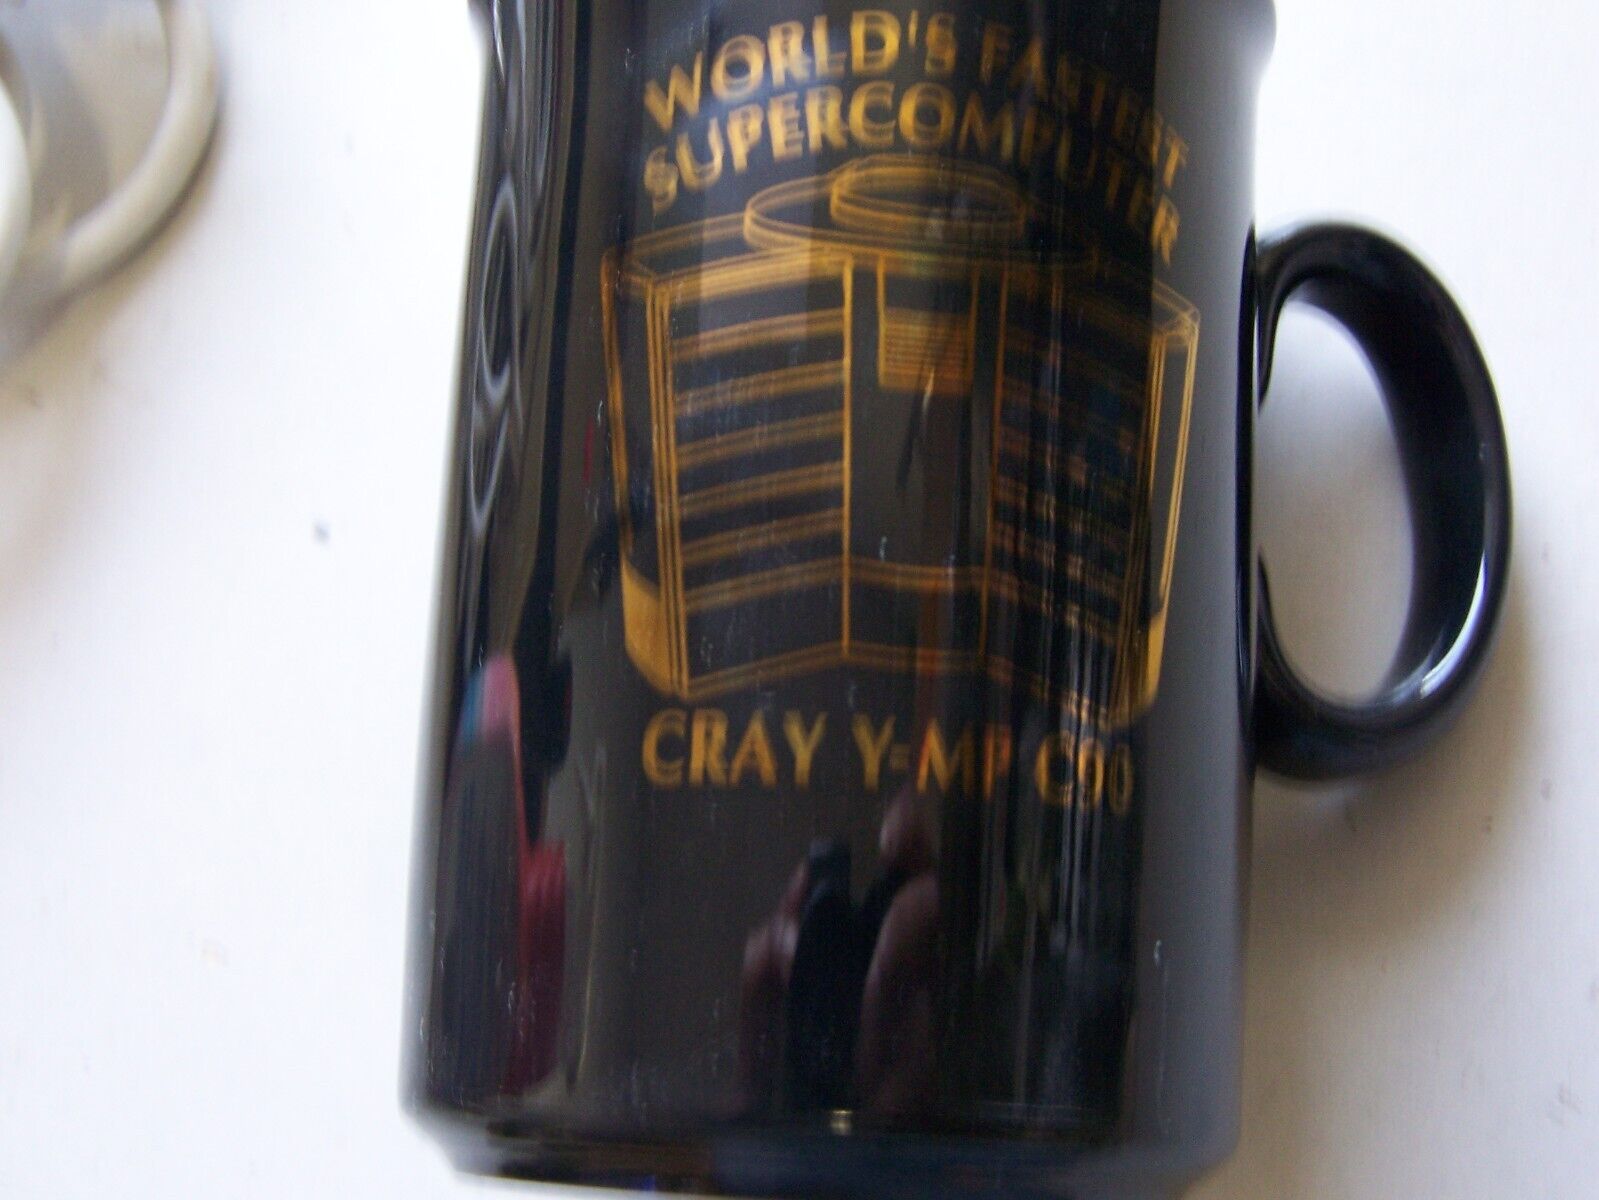 Cray Y-MP C90 Worlds Fastest Supercomputer Coffee Mug